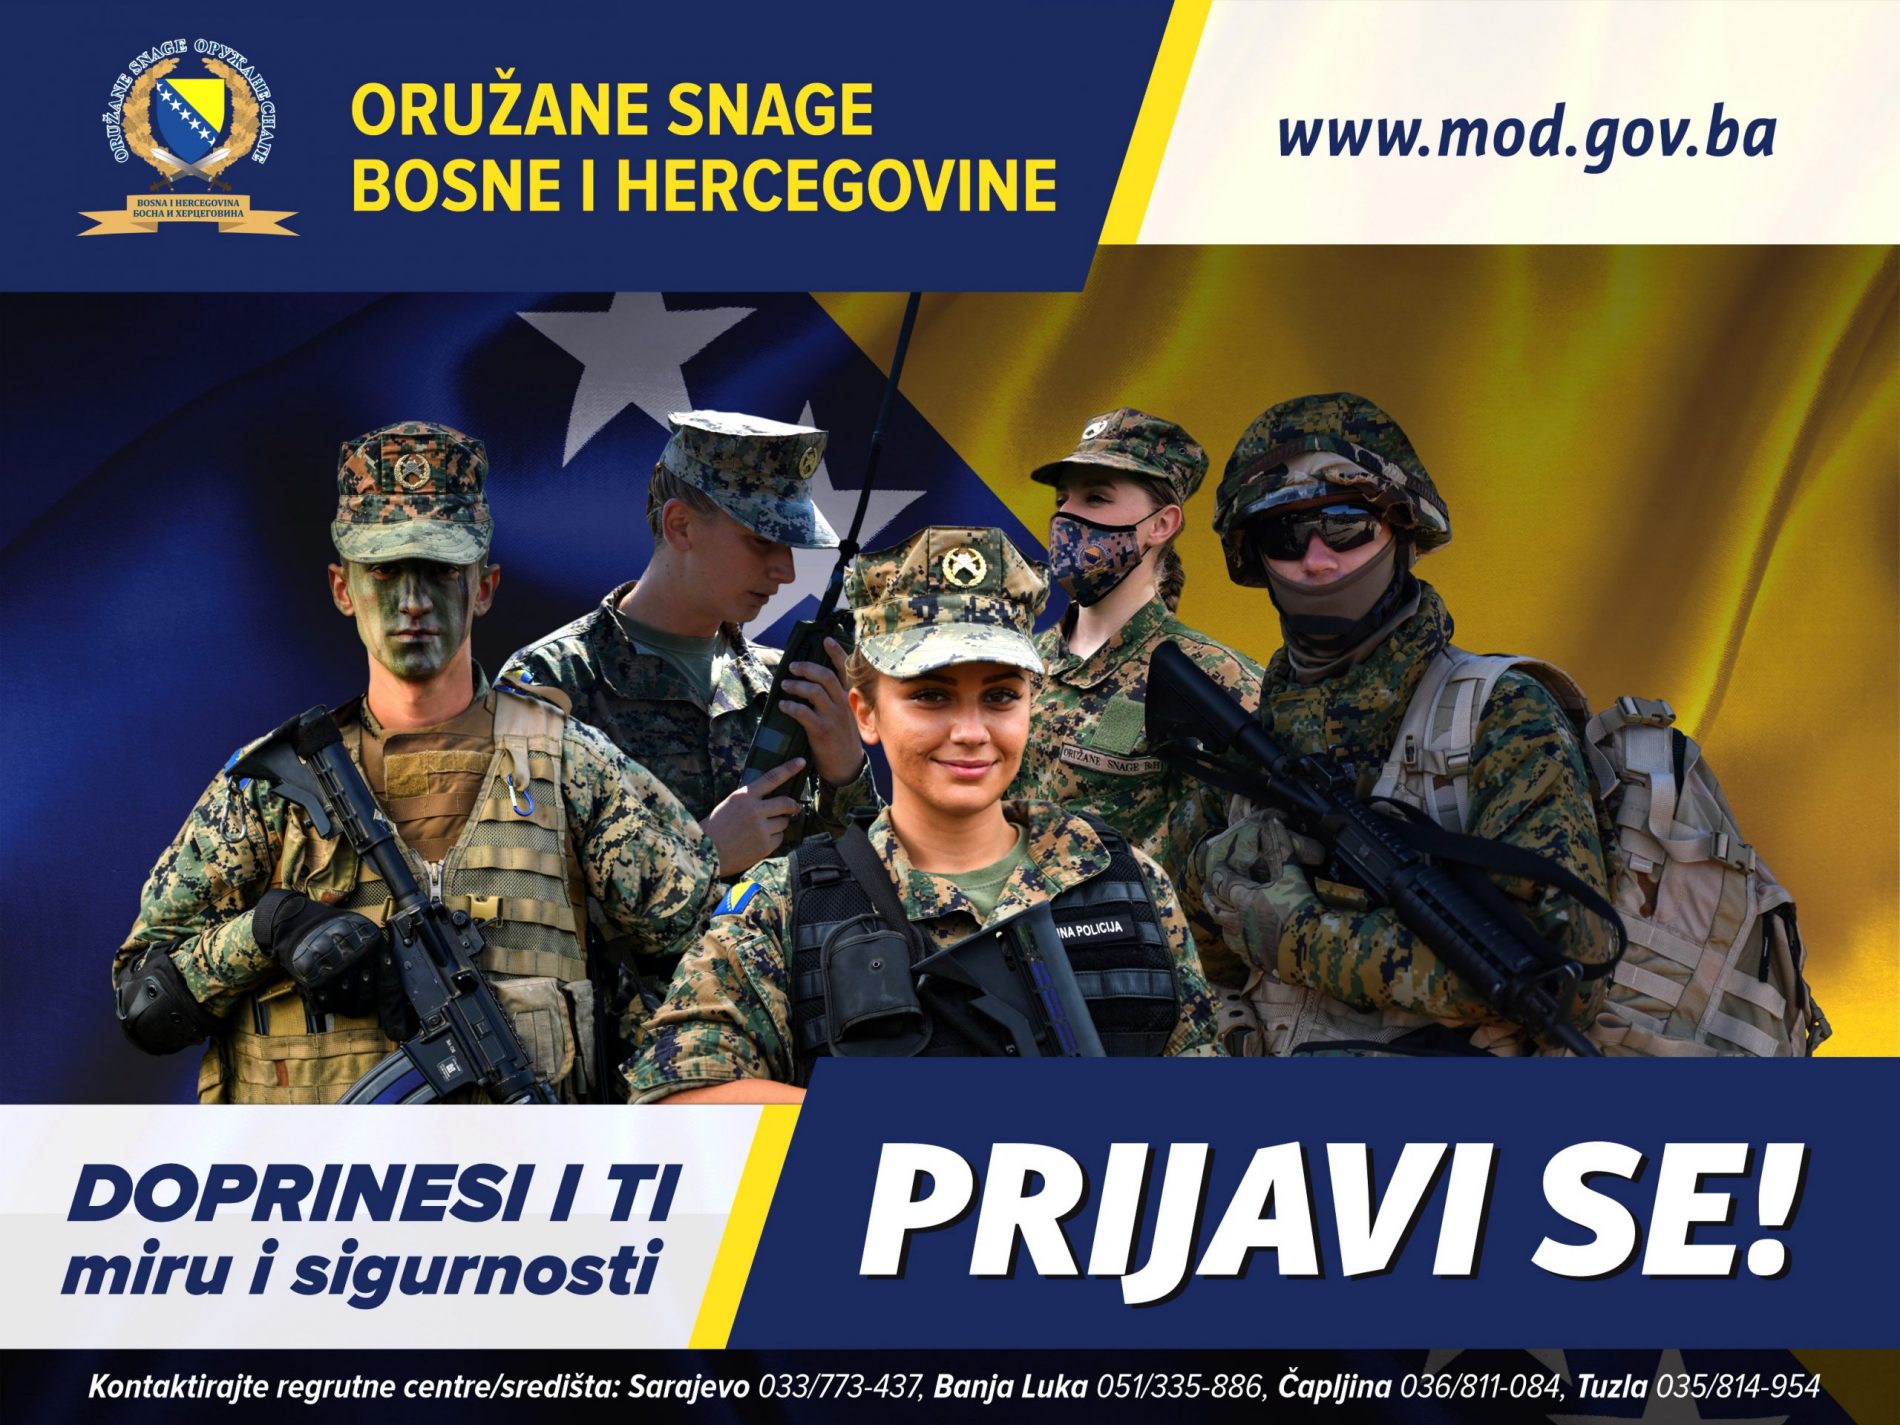 Ministarstvo odbrane BiH raspisalo oglas za prijem 400 kandidata u profesionalnu vojnu službu u činu vojnika Oružanih snaga BiH